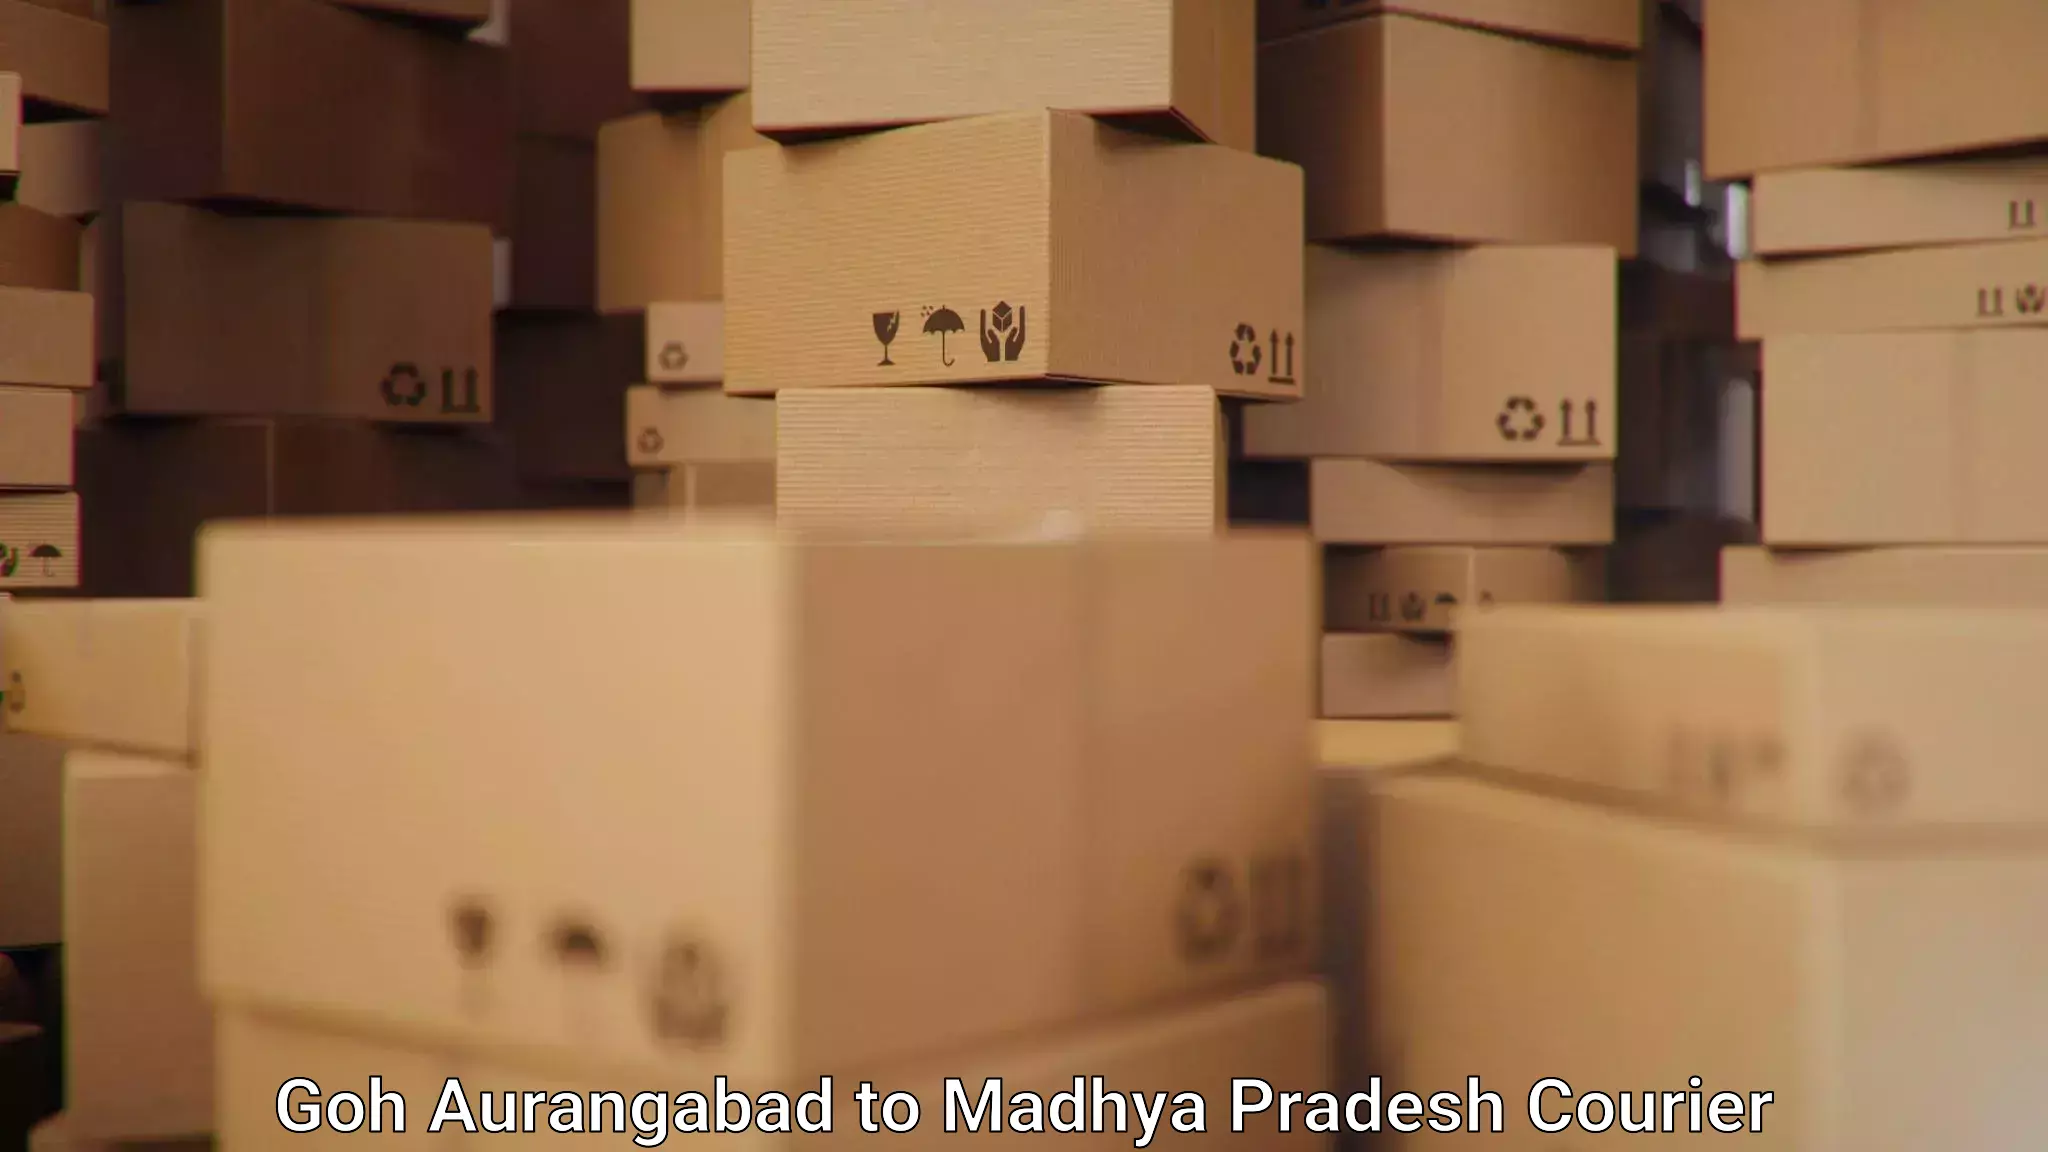 Nationwide shipping capabilities Goh Aurangabad to Madhya Pradesh